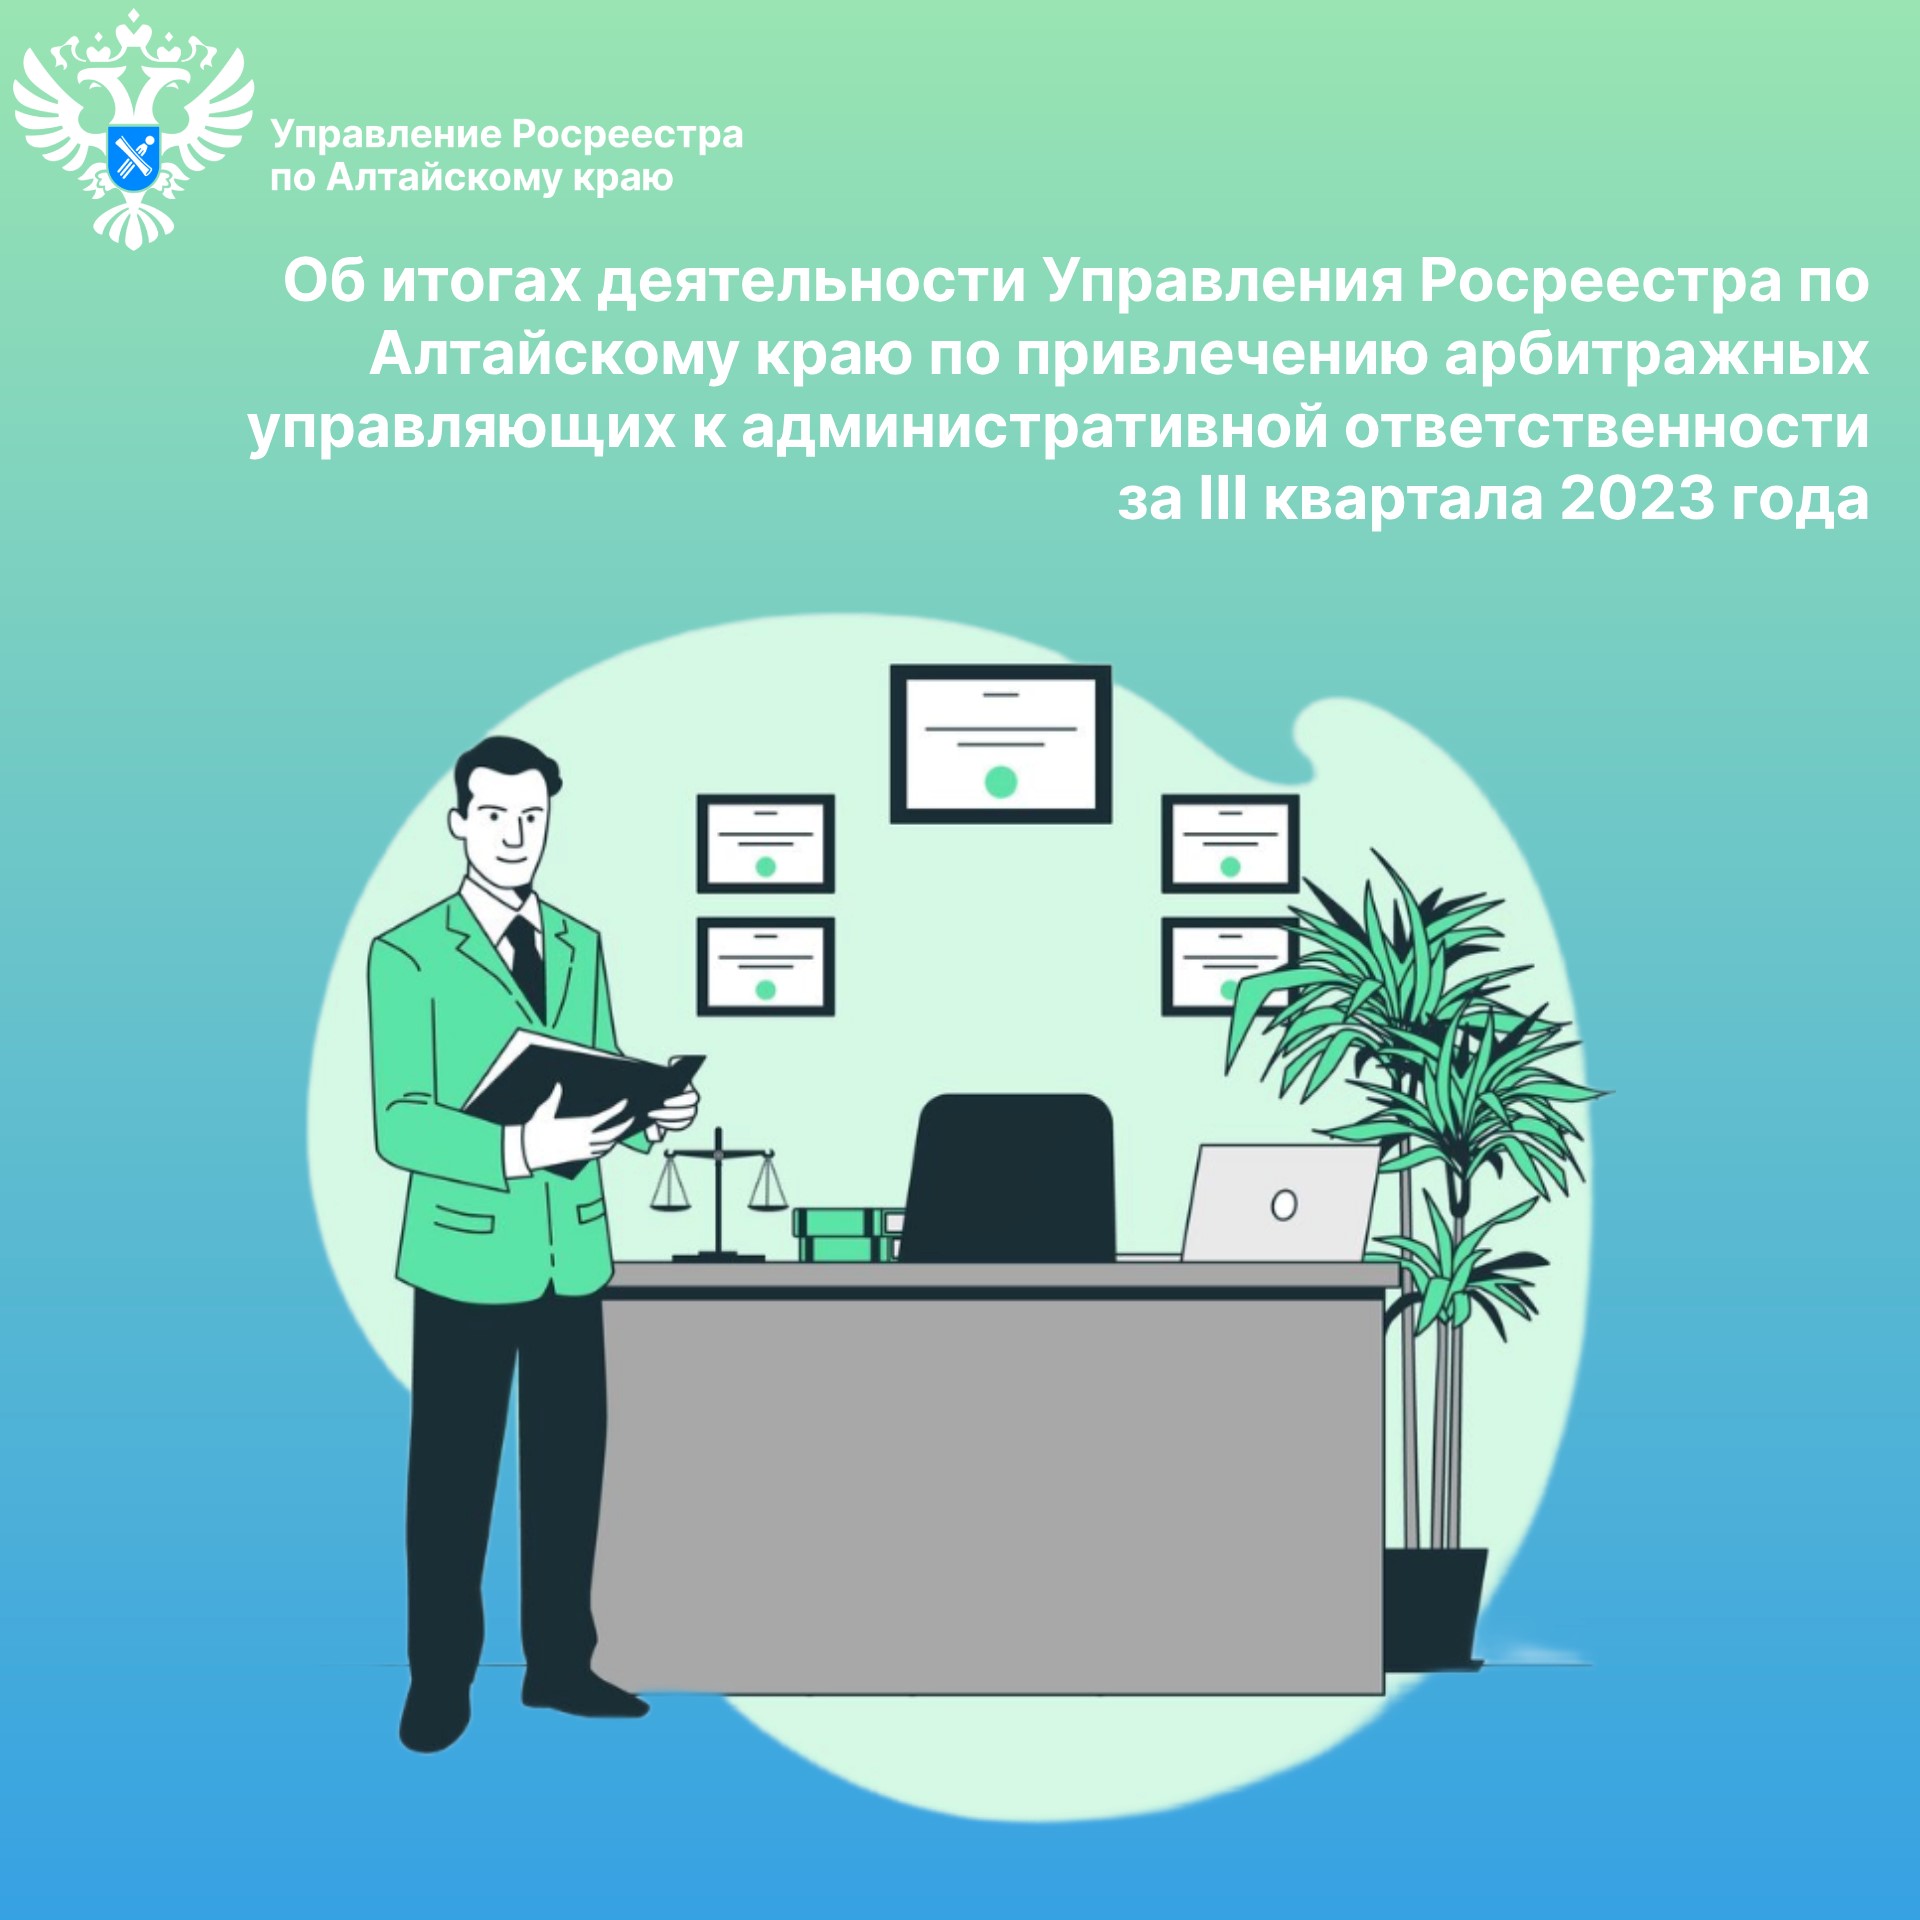 Об итогах деятельности Управления Росреестра по Алтайскому краю по привлечению арбитражных управляющих к административной ответственности за III квартала 2023 года.